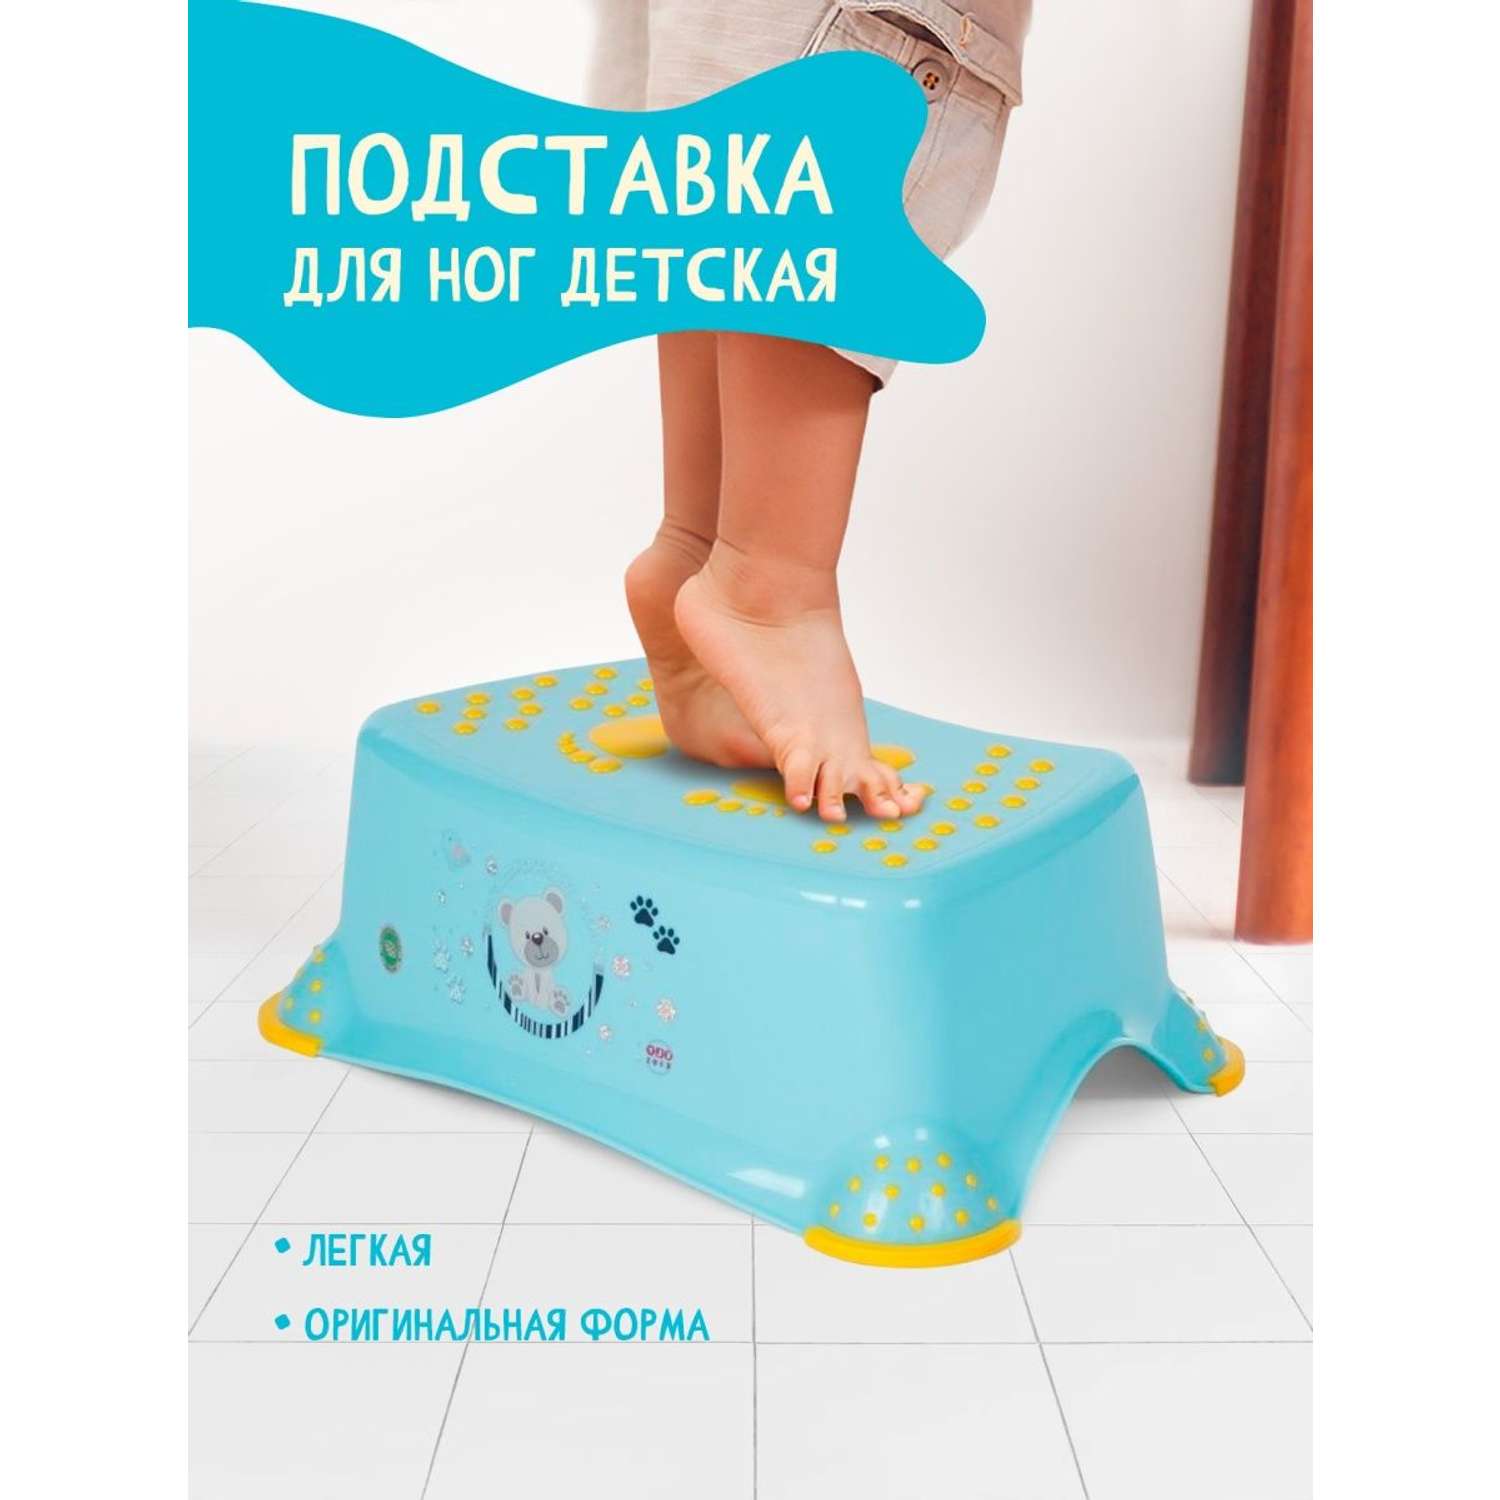 Подставка для ног elfplast детская голубой - фото 1